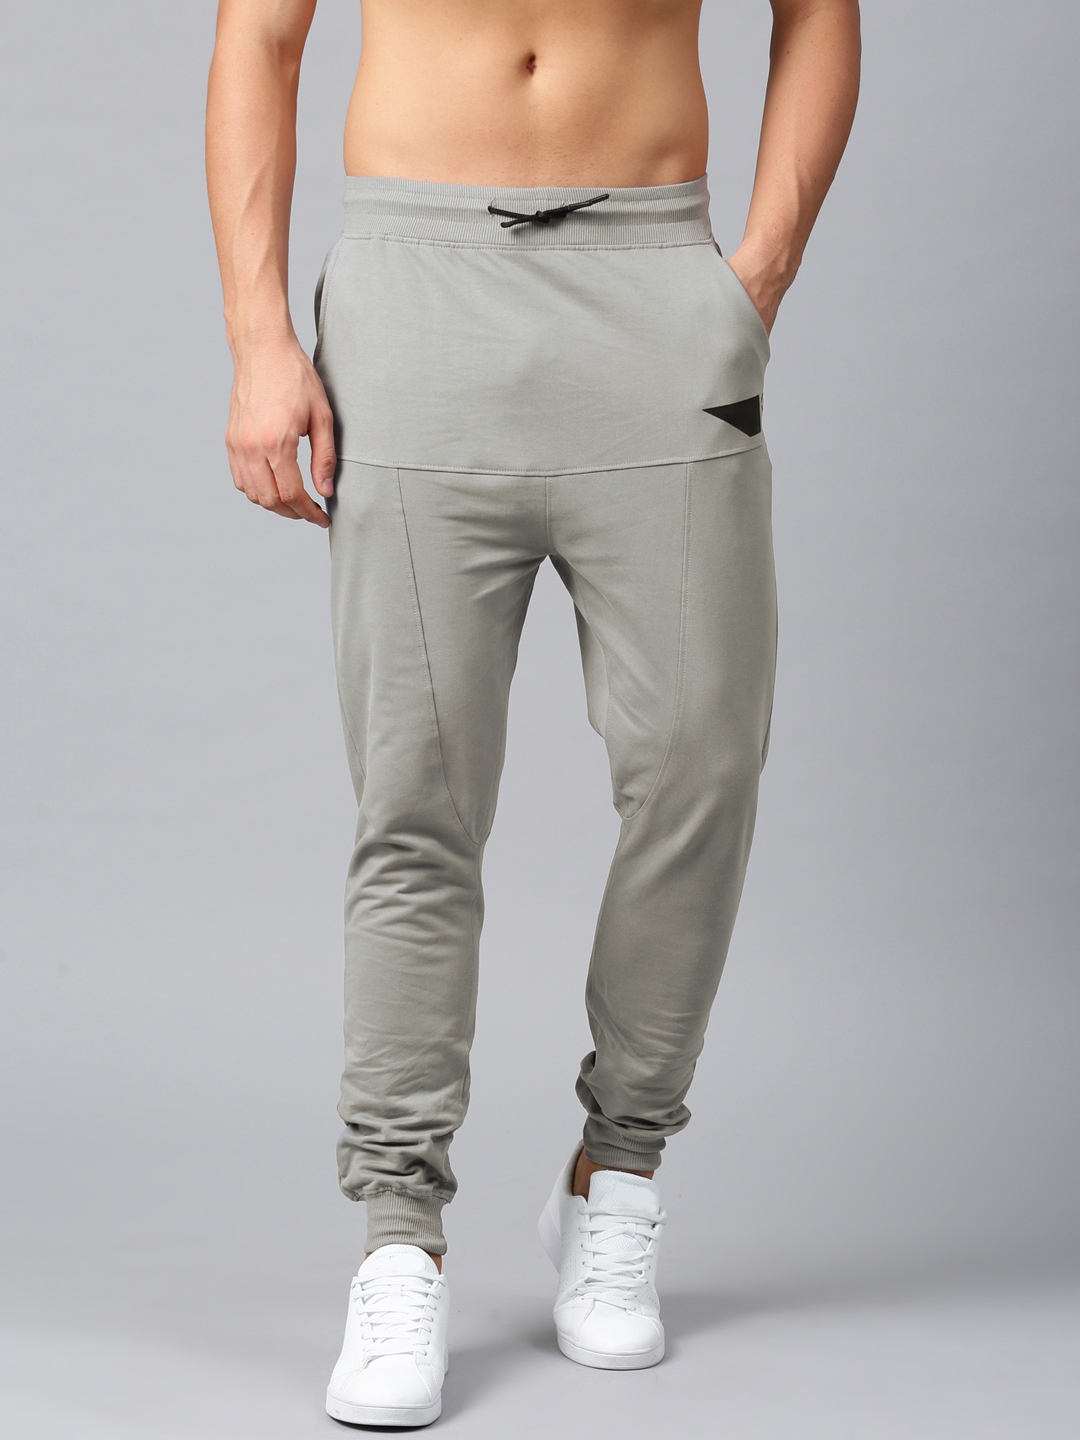 Mens XL Xcelsius Active Grey Sweatpants Joggers 